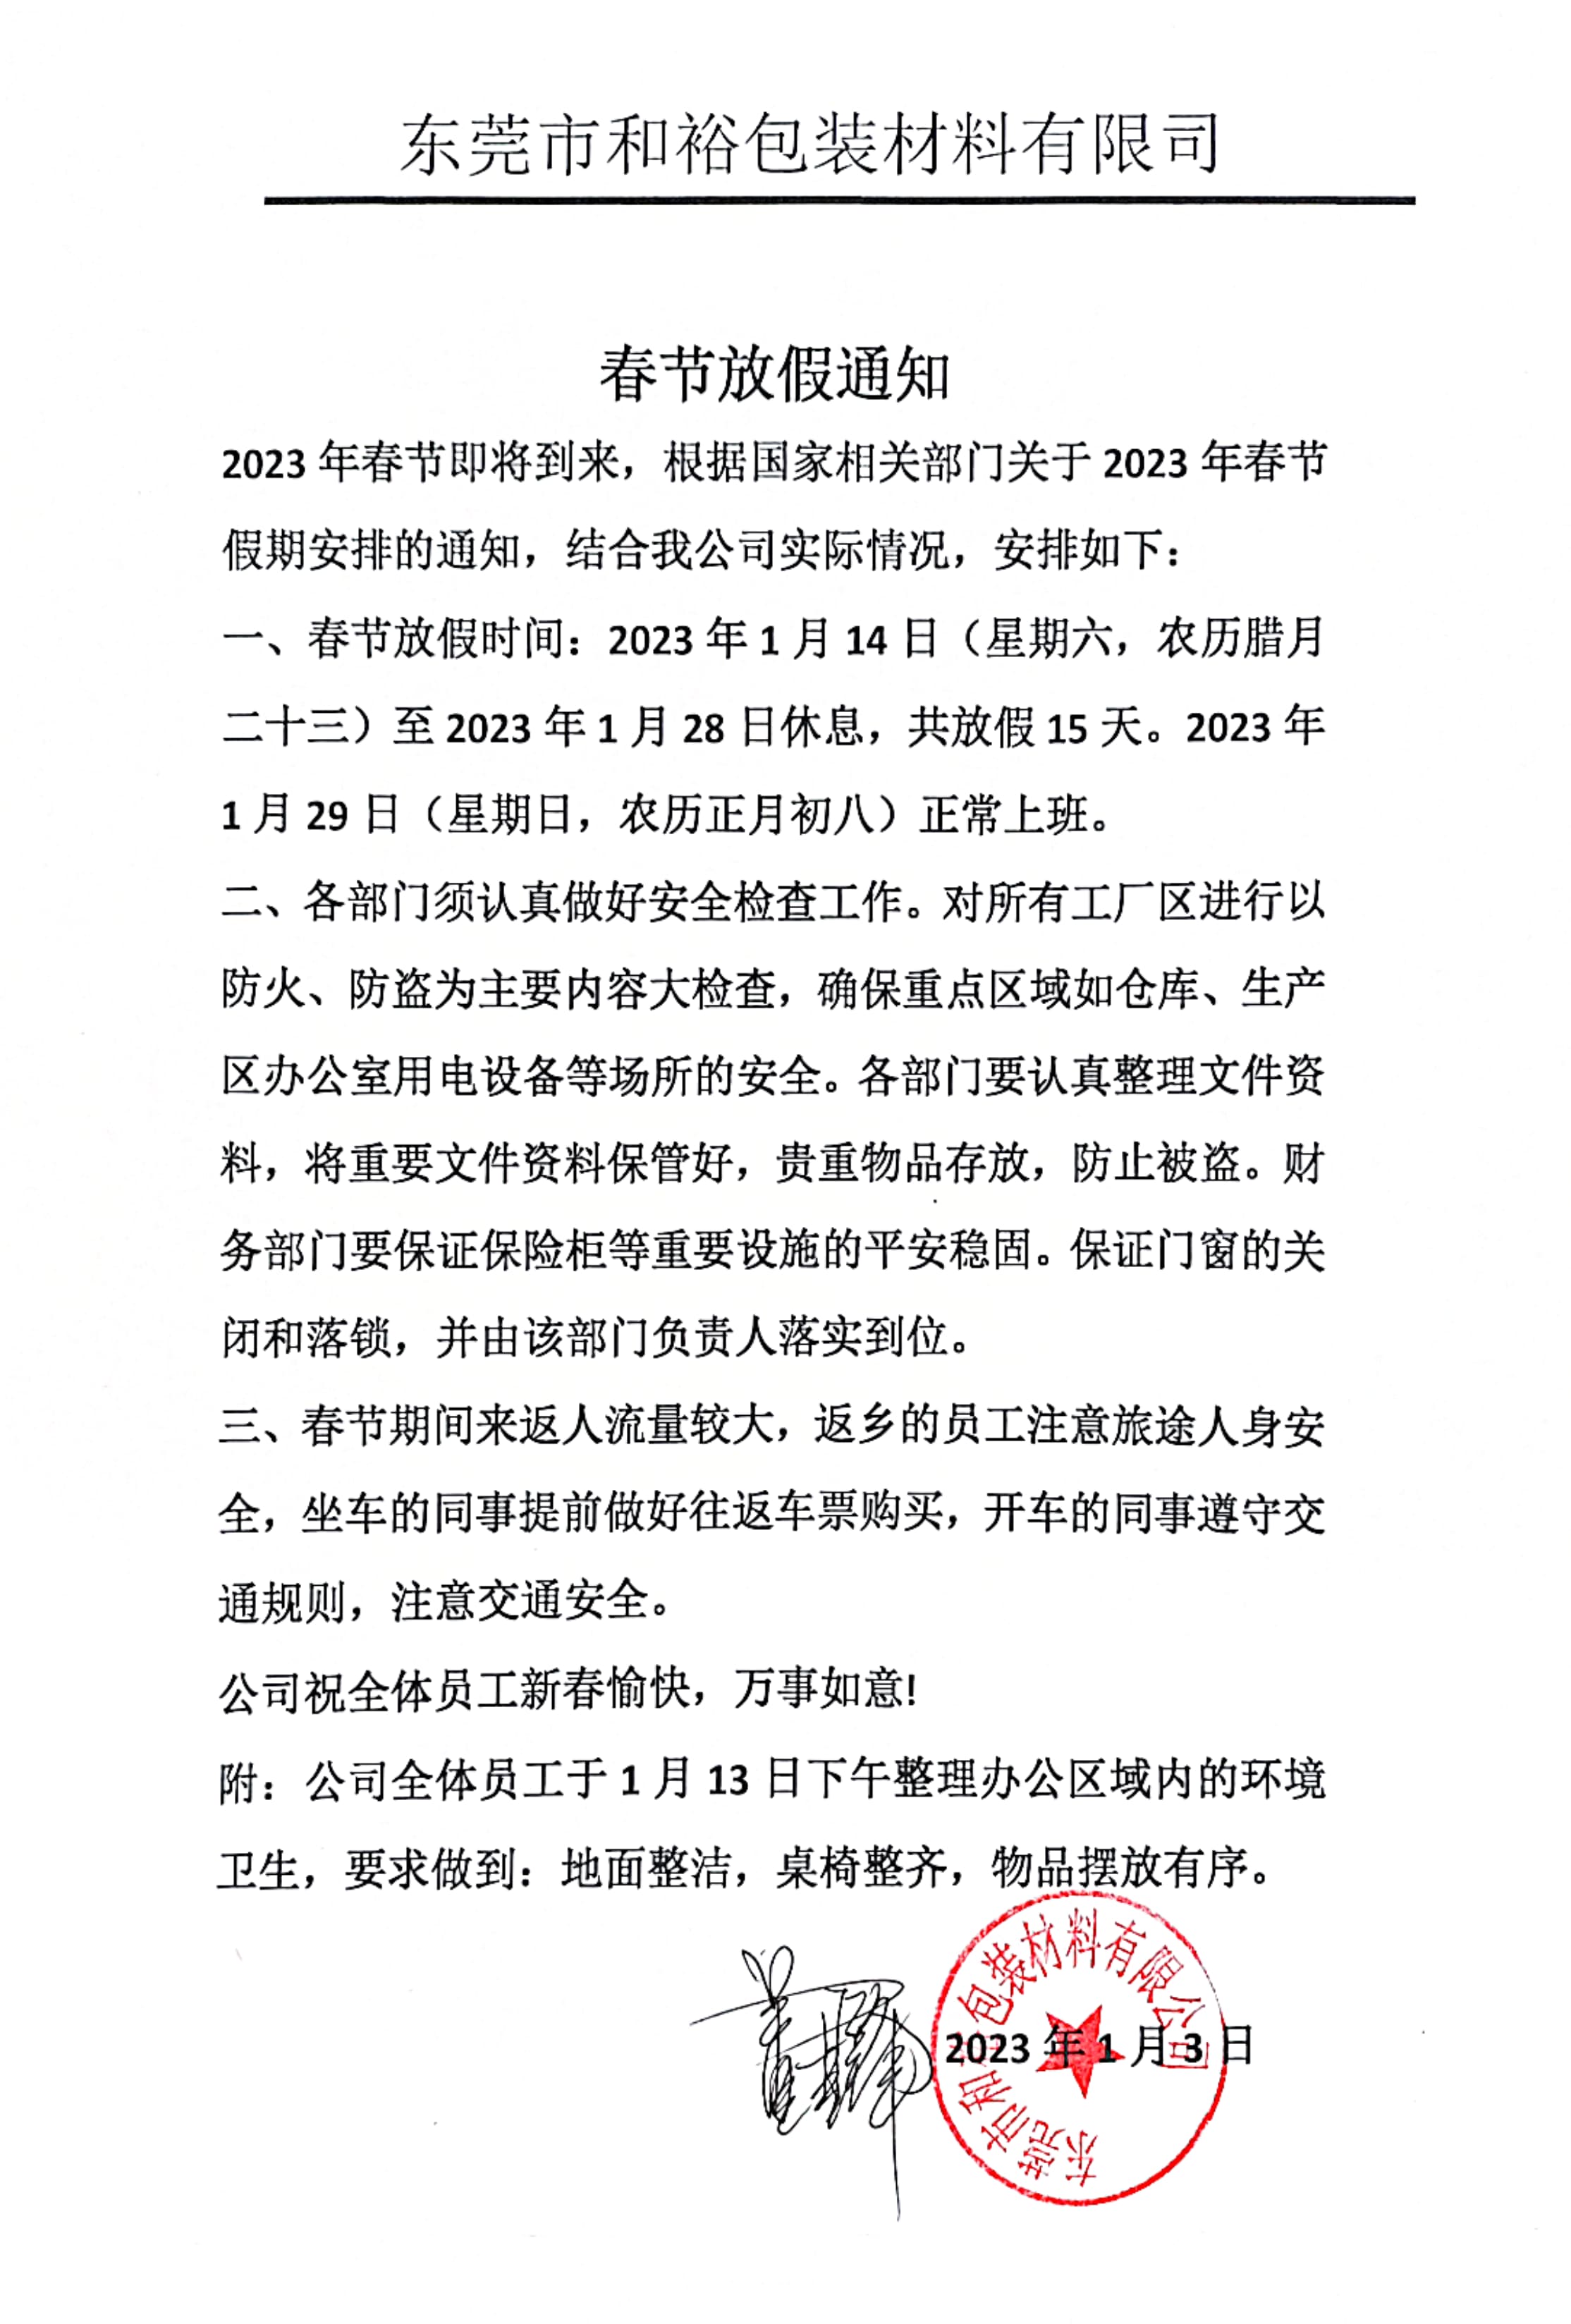 柳州市2023年和裕包装春节放假通知